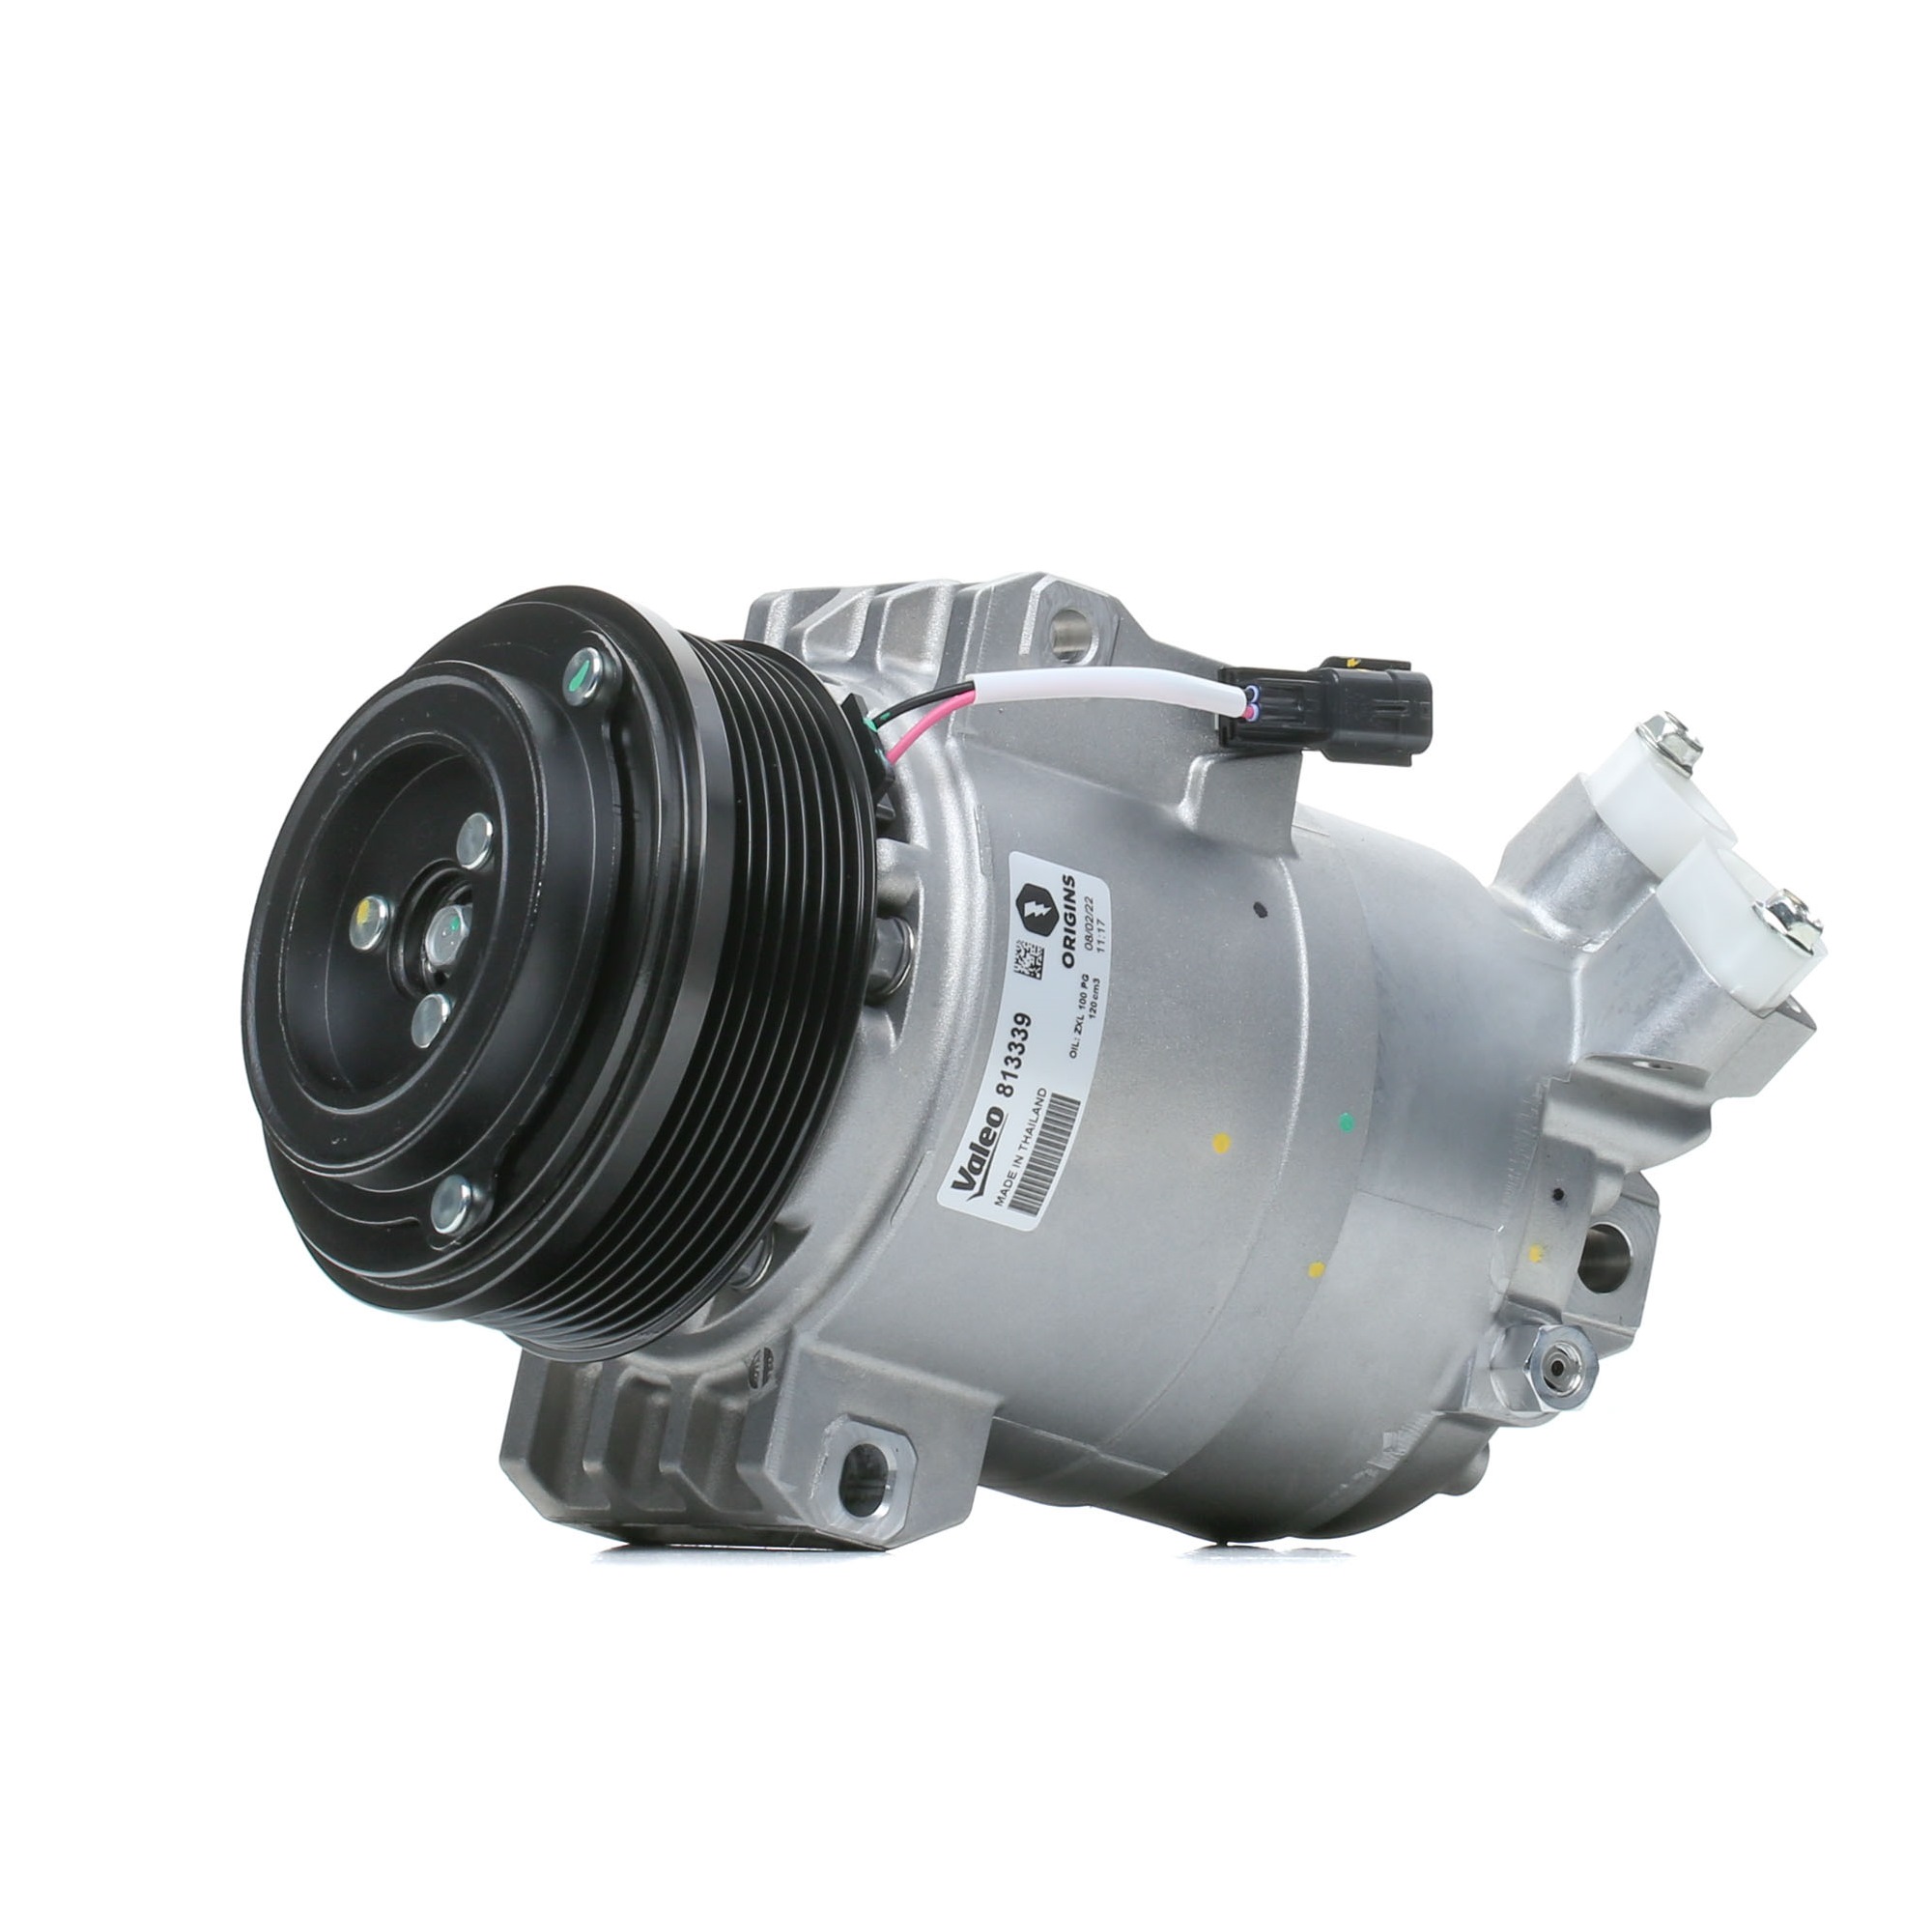 Image of VALEO Compressore Aria Condizionata RENAULT 813339 926007877R,92600JY02A Compressore Climatizzatore,Compressore Clima,Compressore, Climatizzatore